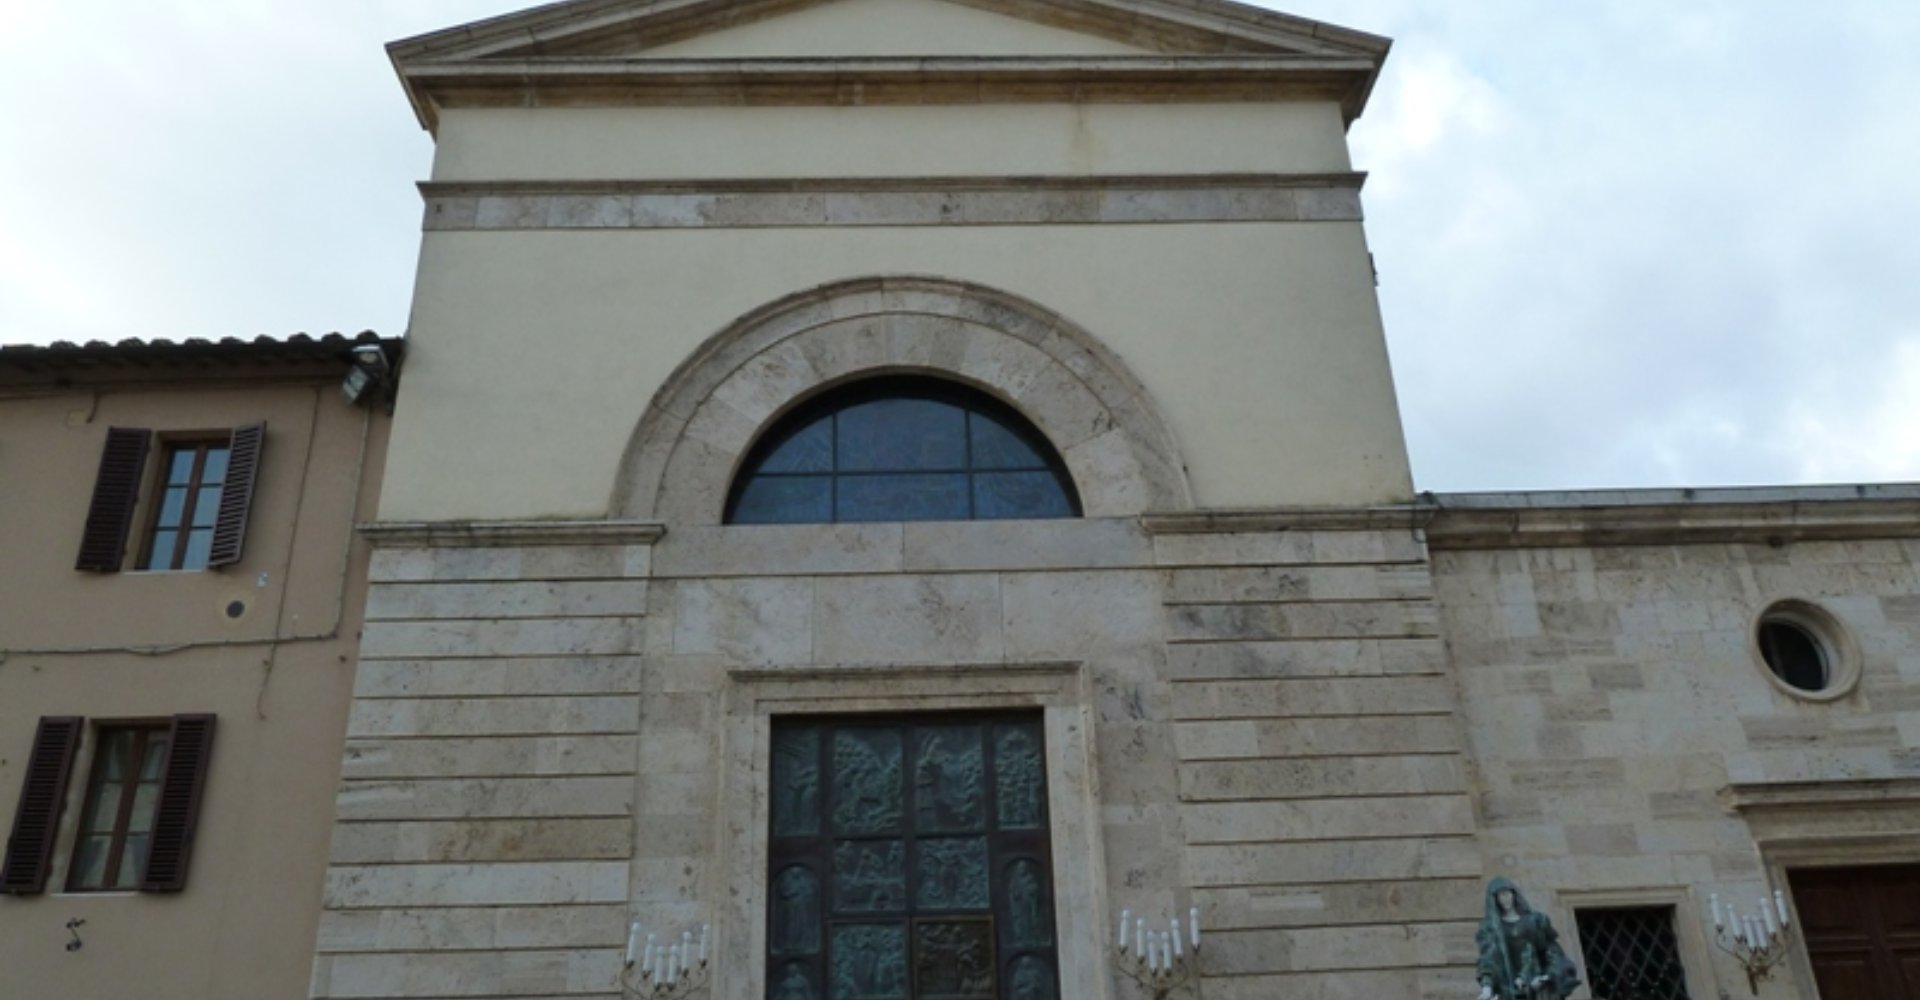 Sanctuary of Maria del Patrocinio in Castelnuovo Berardenga